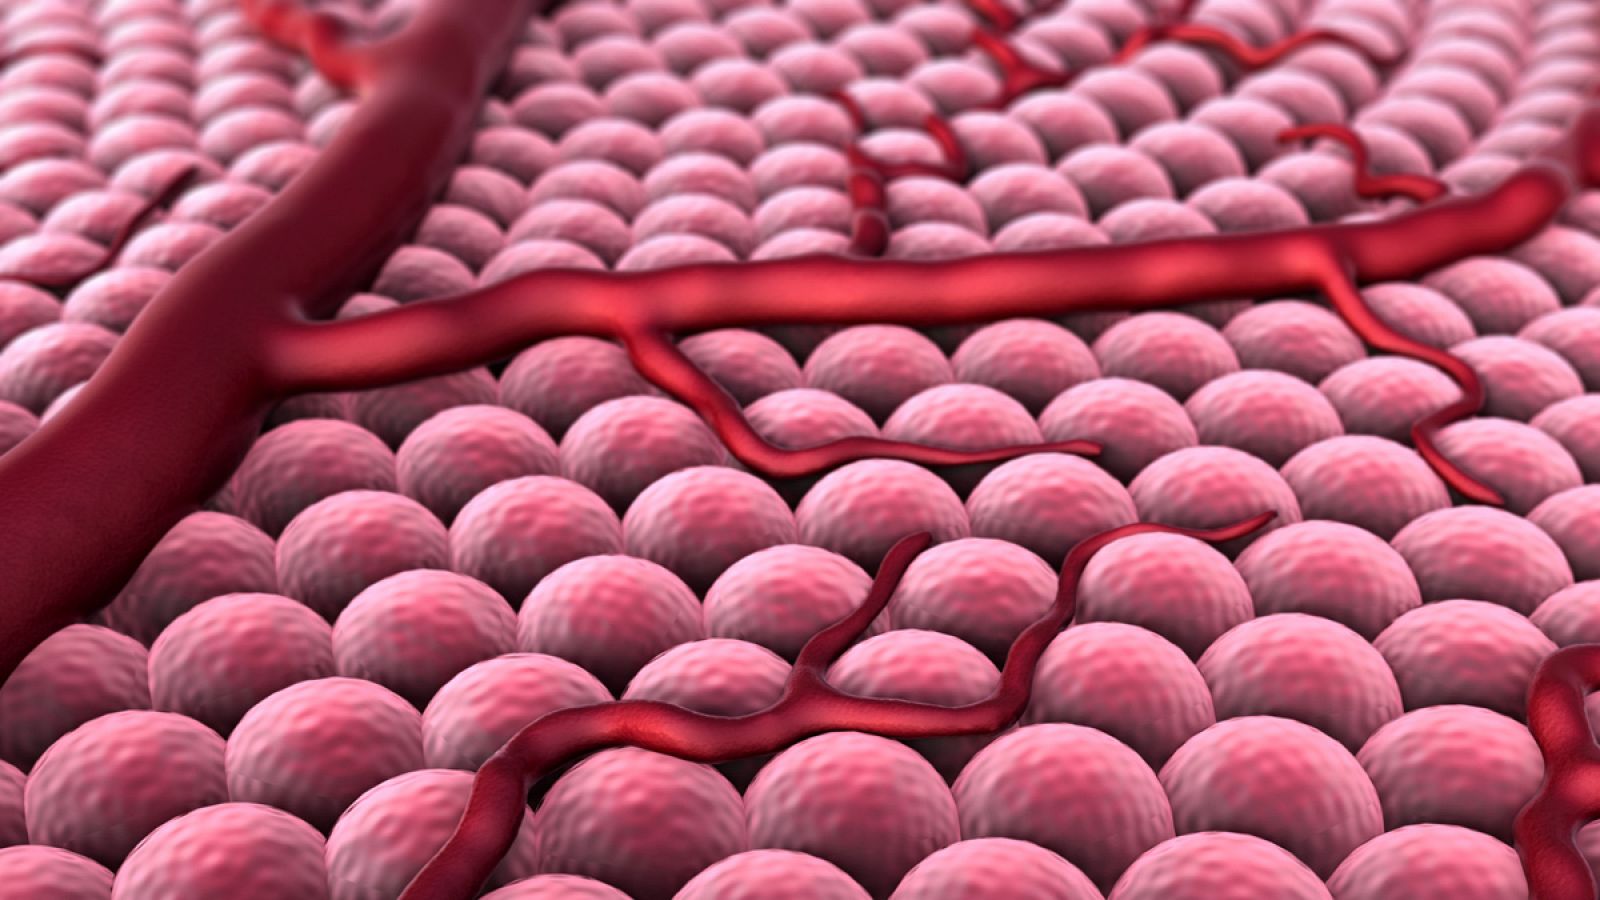 Al miniaturizar los chips es posible introducirlos en células vivas mediante lipofección.